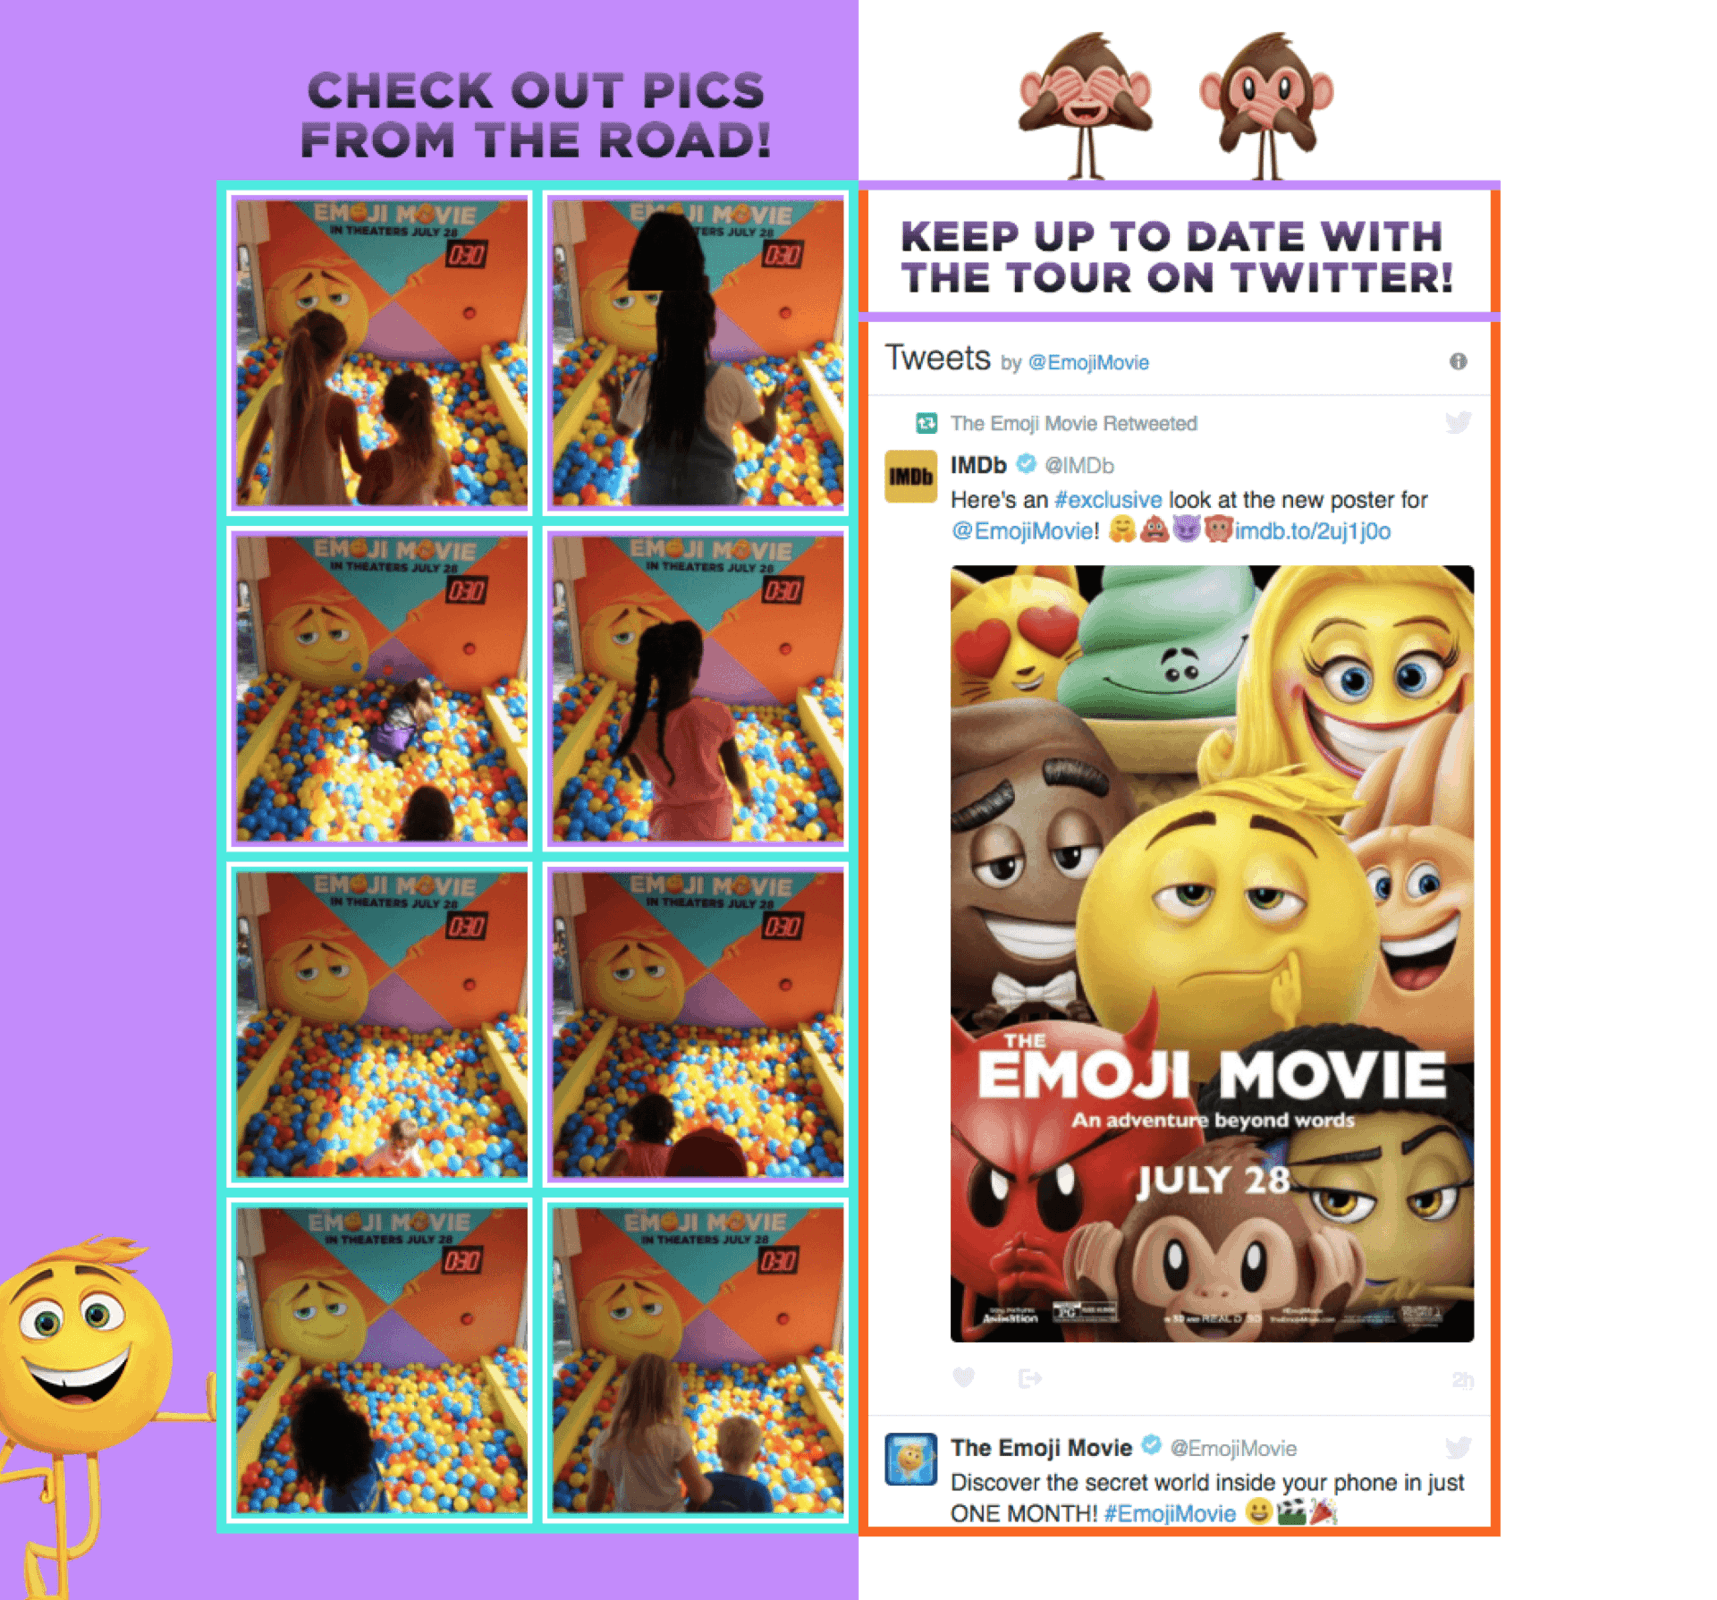 The Emoji Movie Tour 